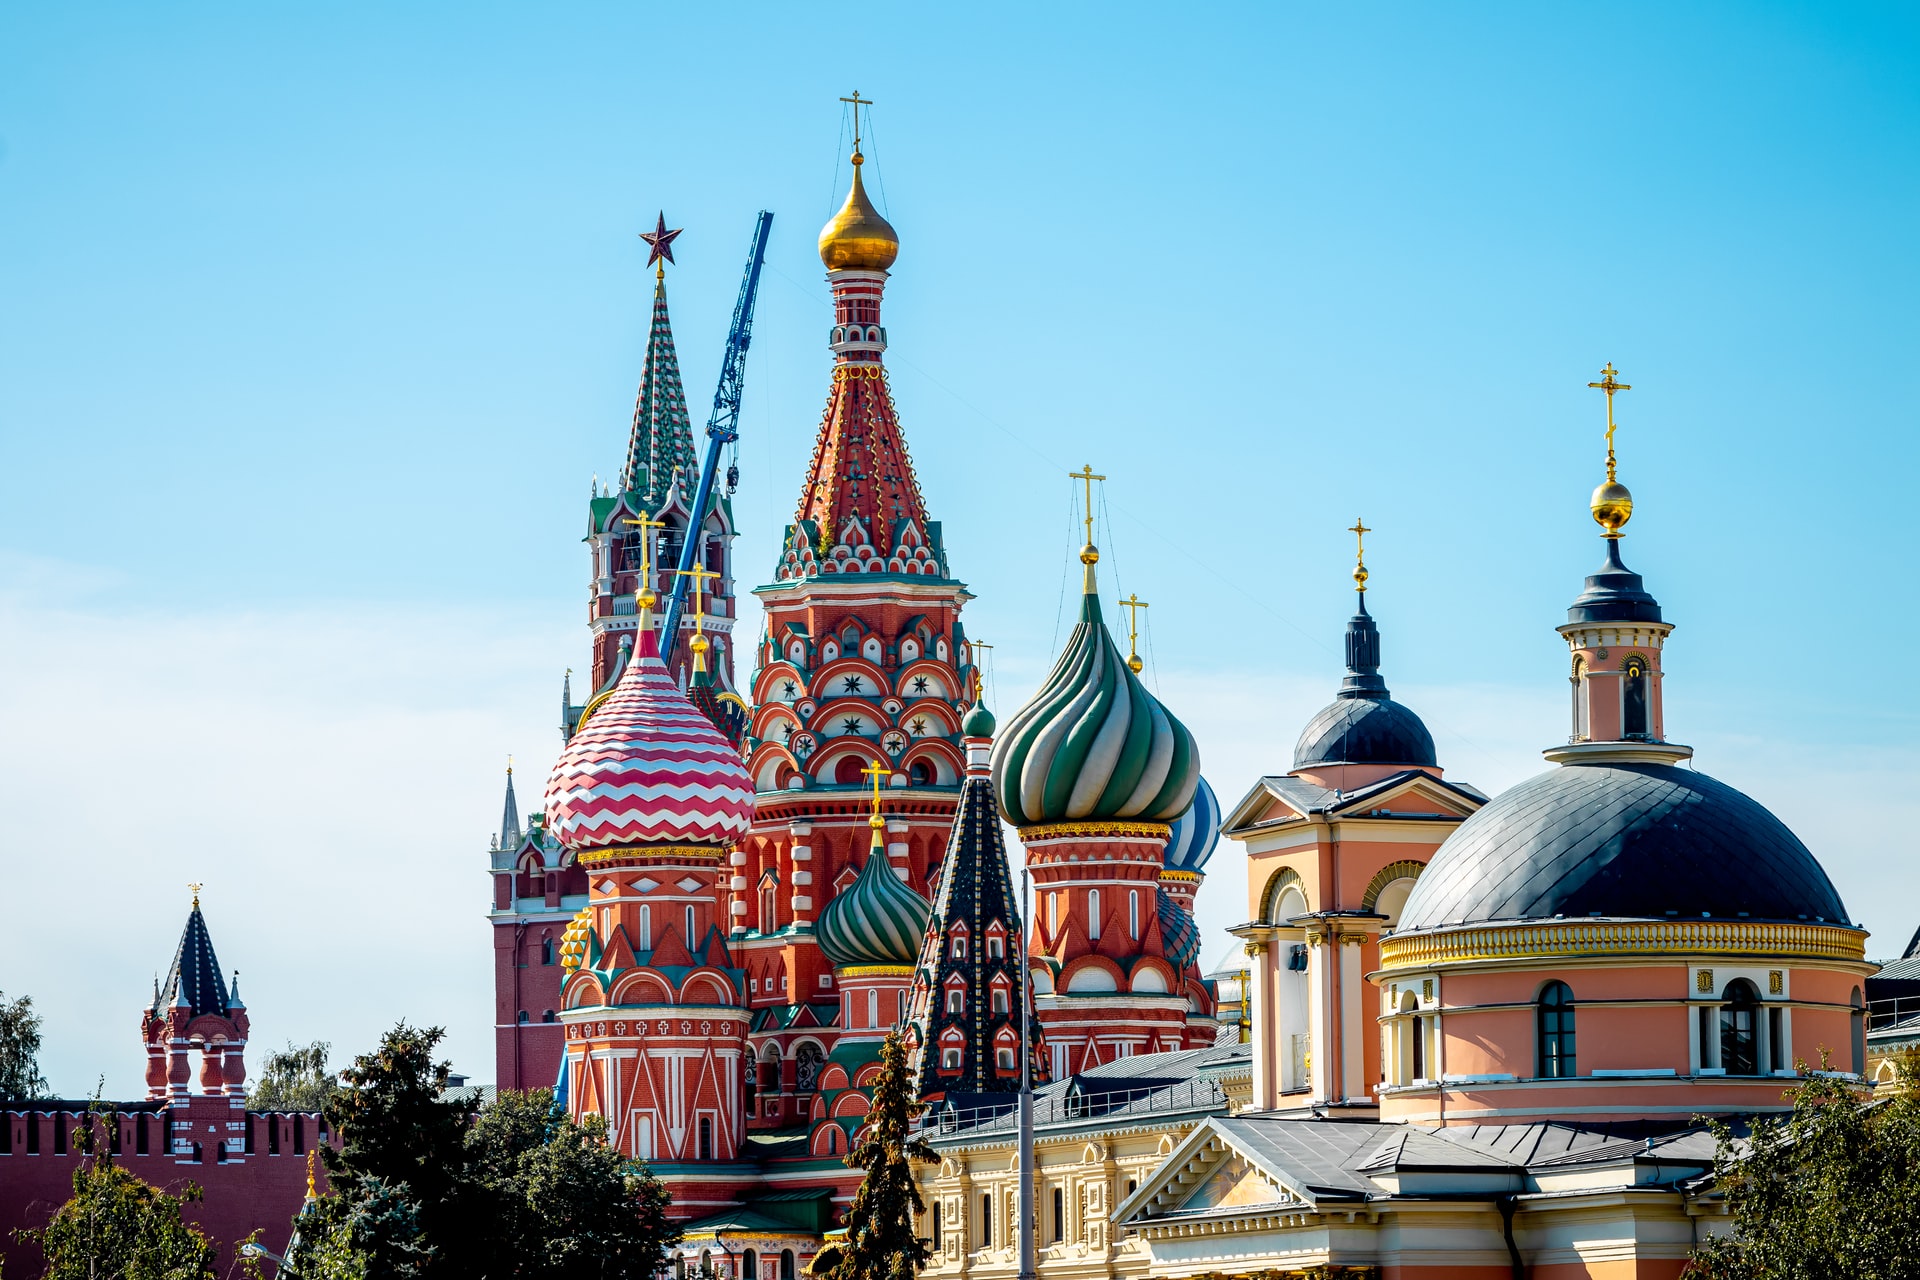 Thánh đường Saint Basil là một trong những điểm du lịch hàng đầu ở Nga